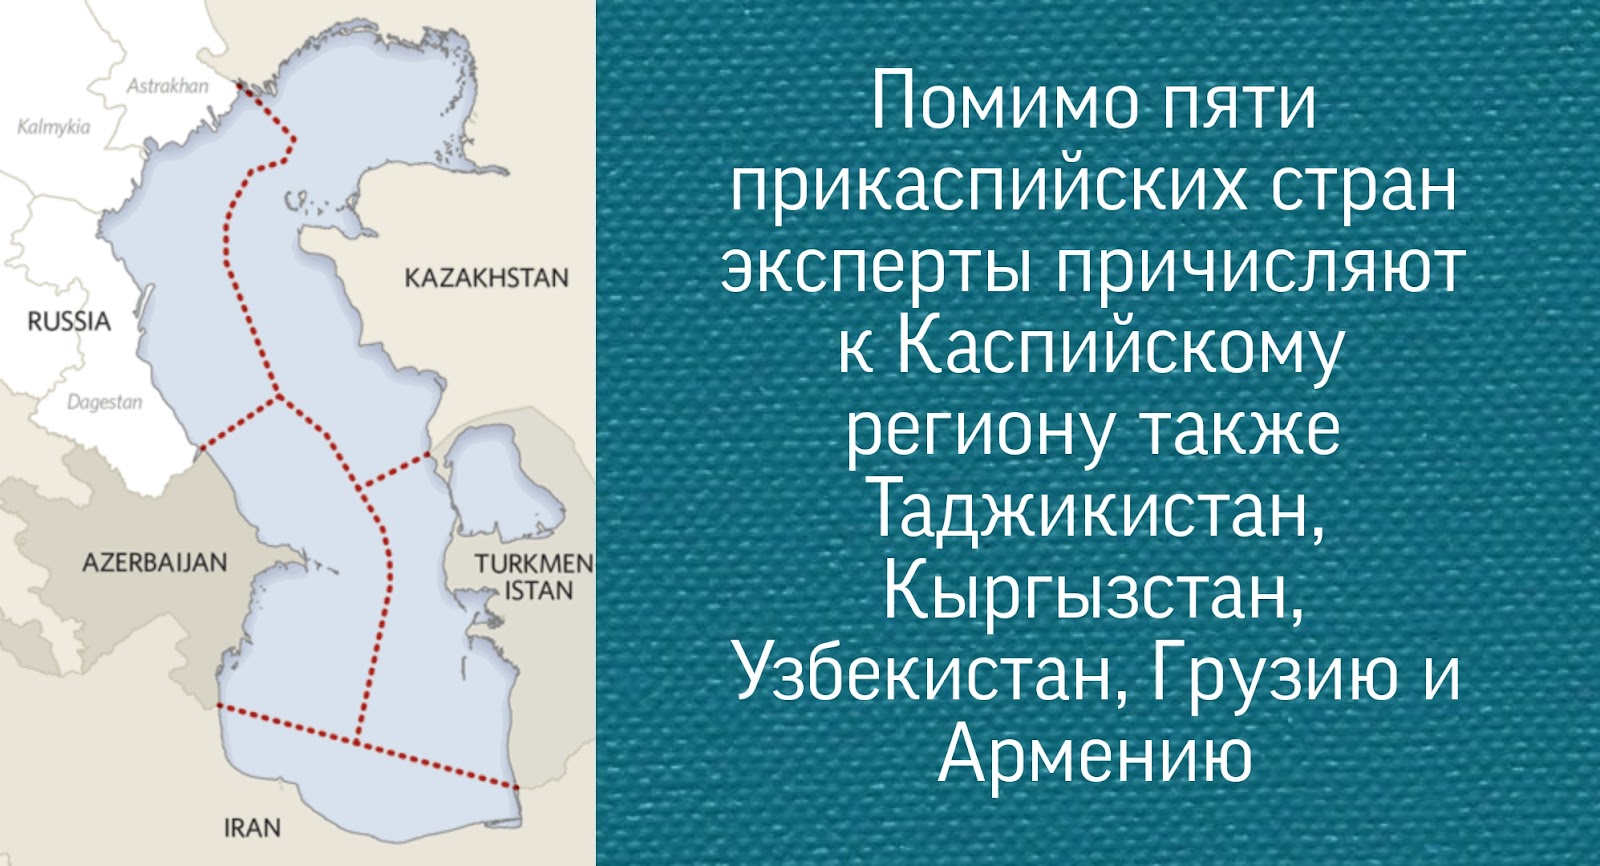 Имеет ли урал выход к морю. Каспийский регион. Прикаспийский регион. Каспий регион номера. Какие страны имеют выход к Каспийскому морю.